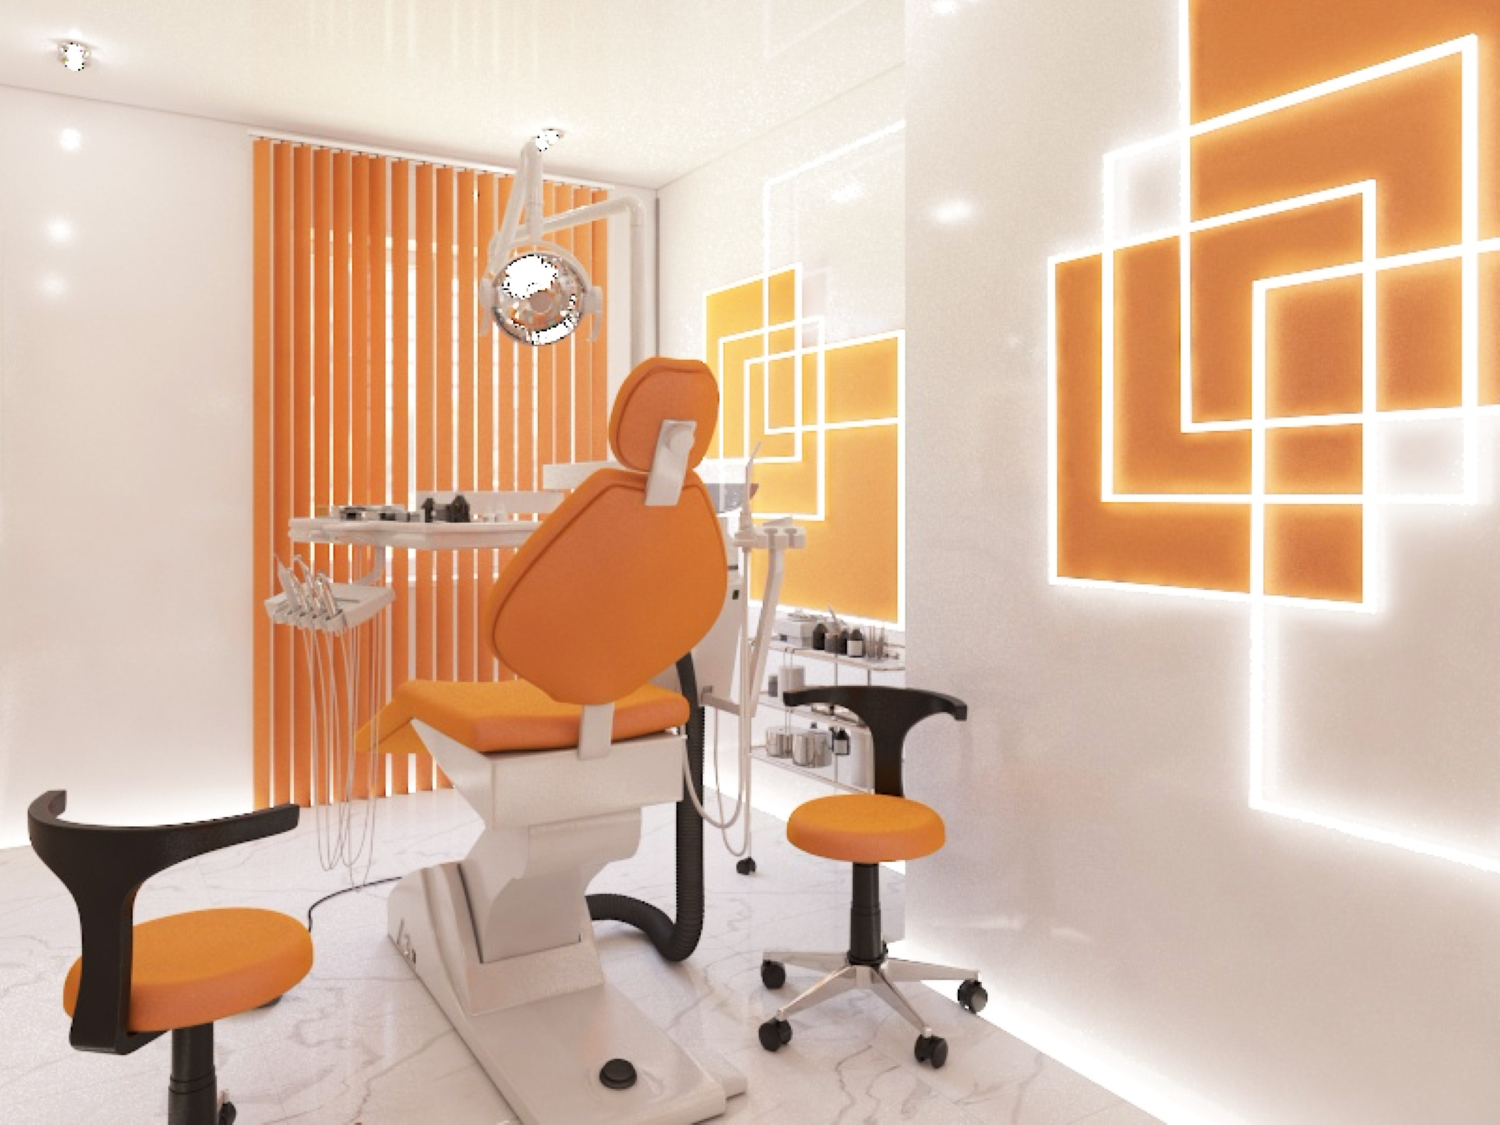 Стоматологическая клиника "Денталь" в 3d max vray 3.0 изображение